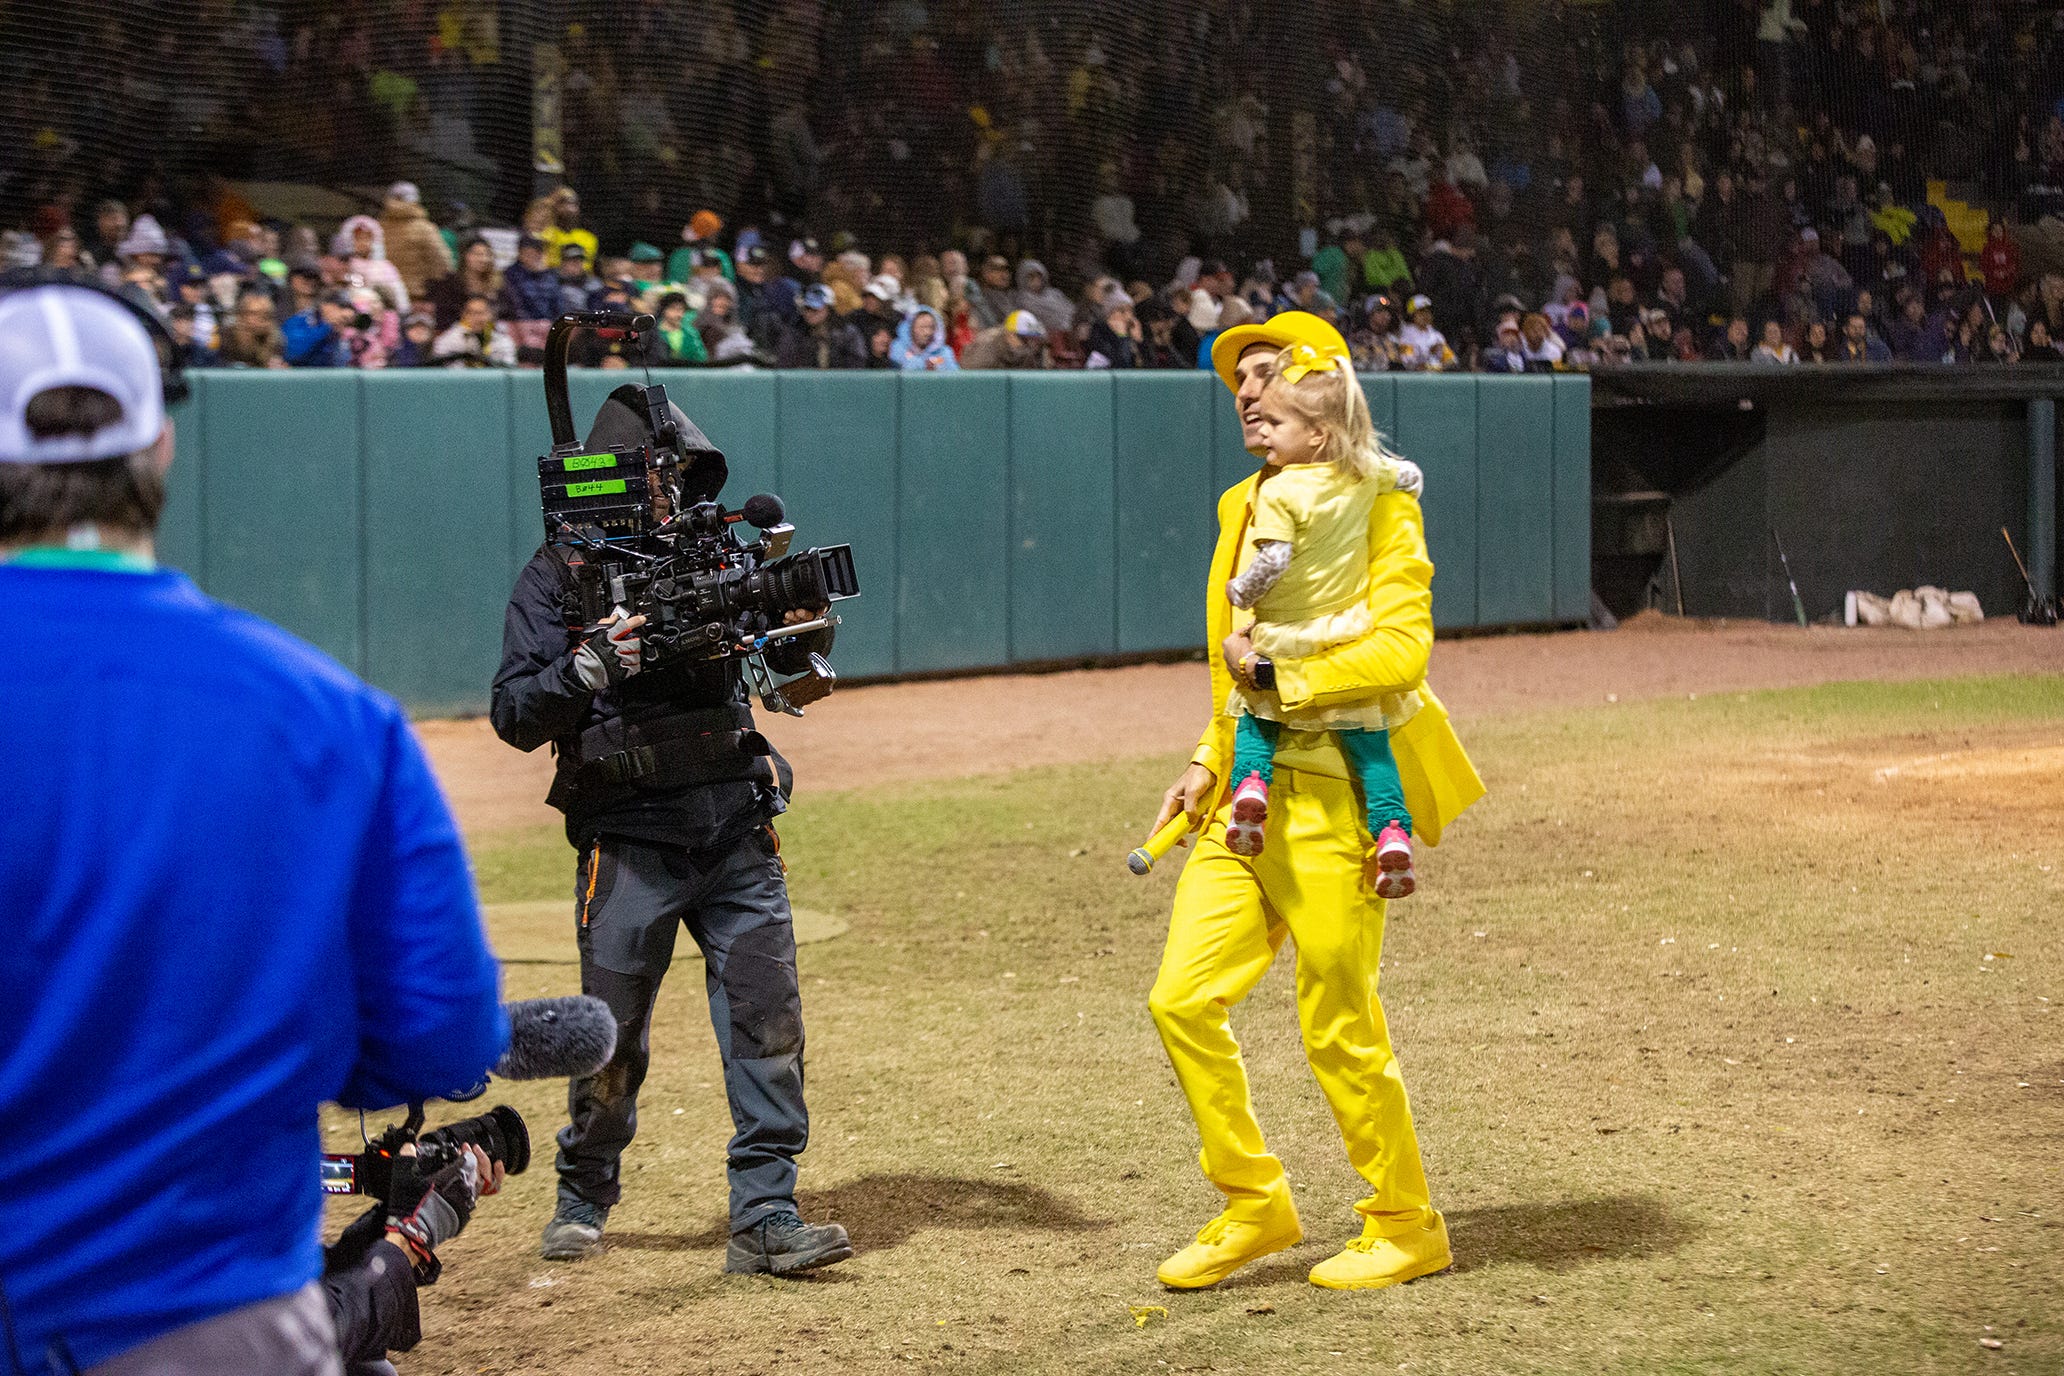 Savannah Bananas baseball team in national media, on ESPN+ streaming